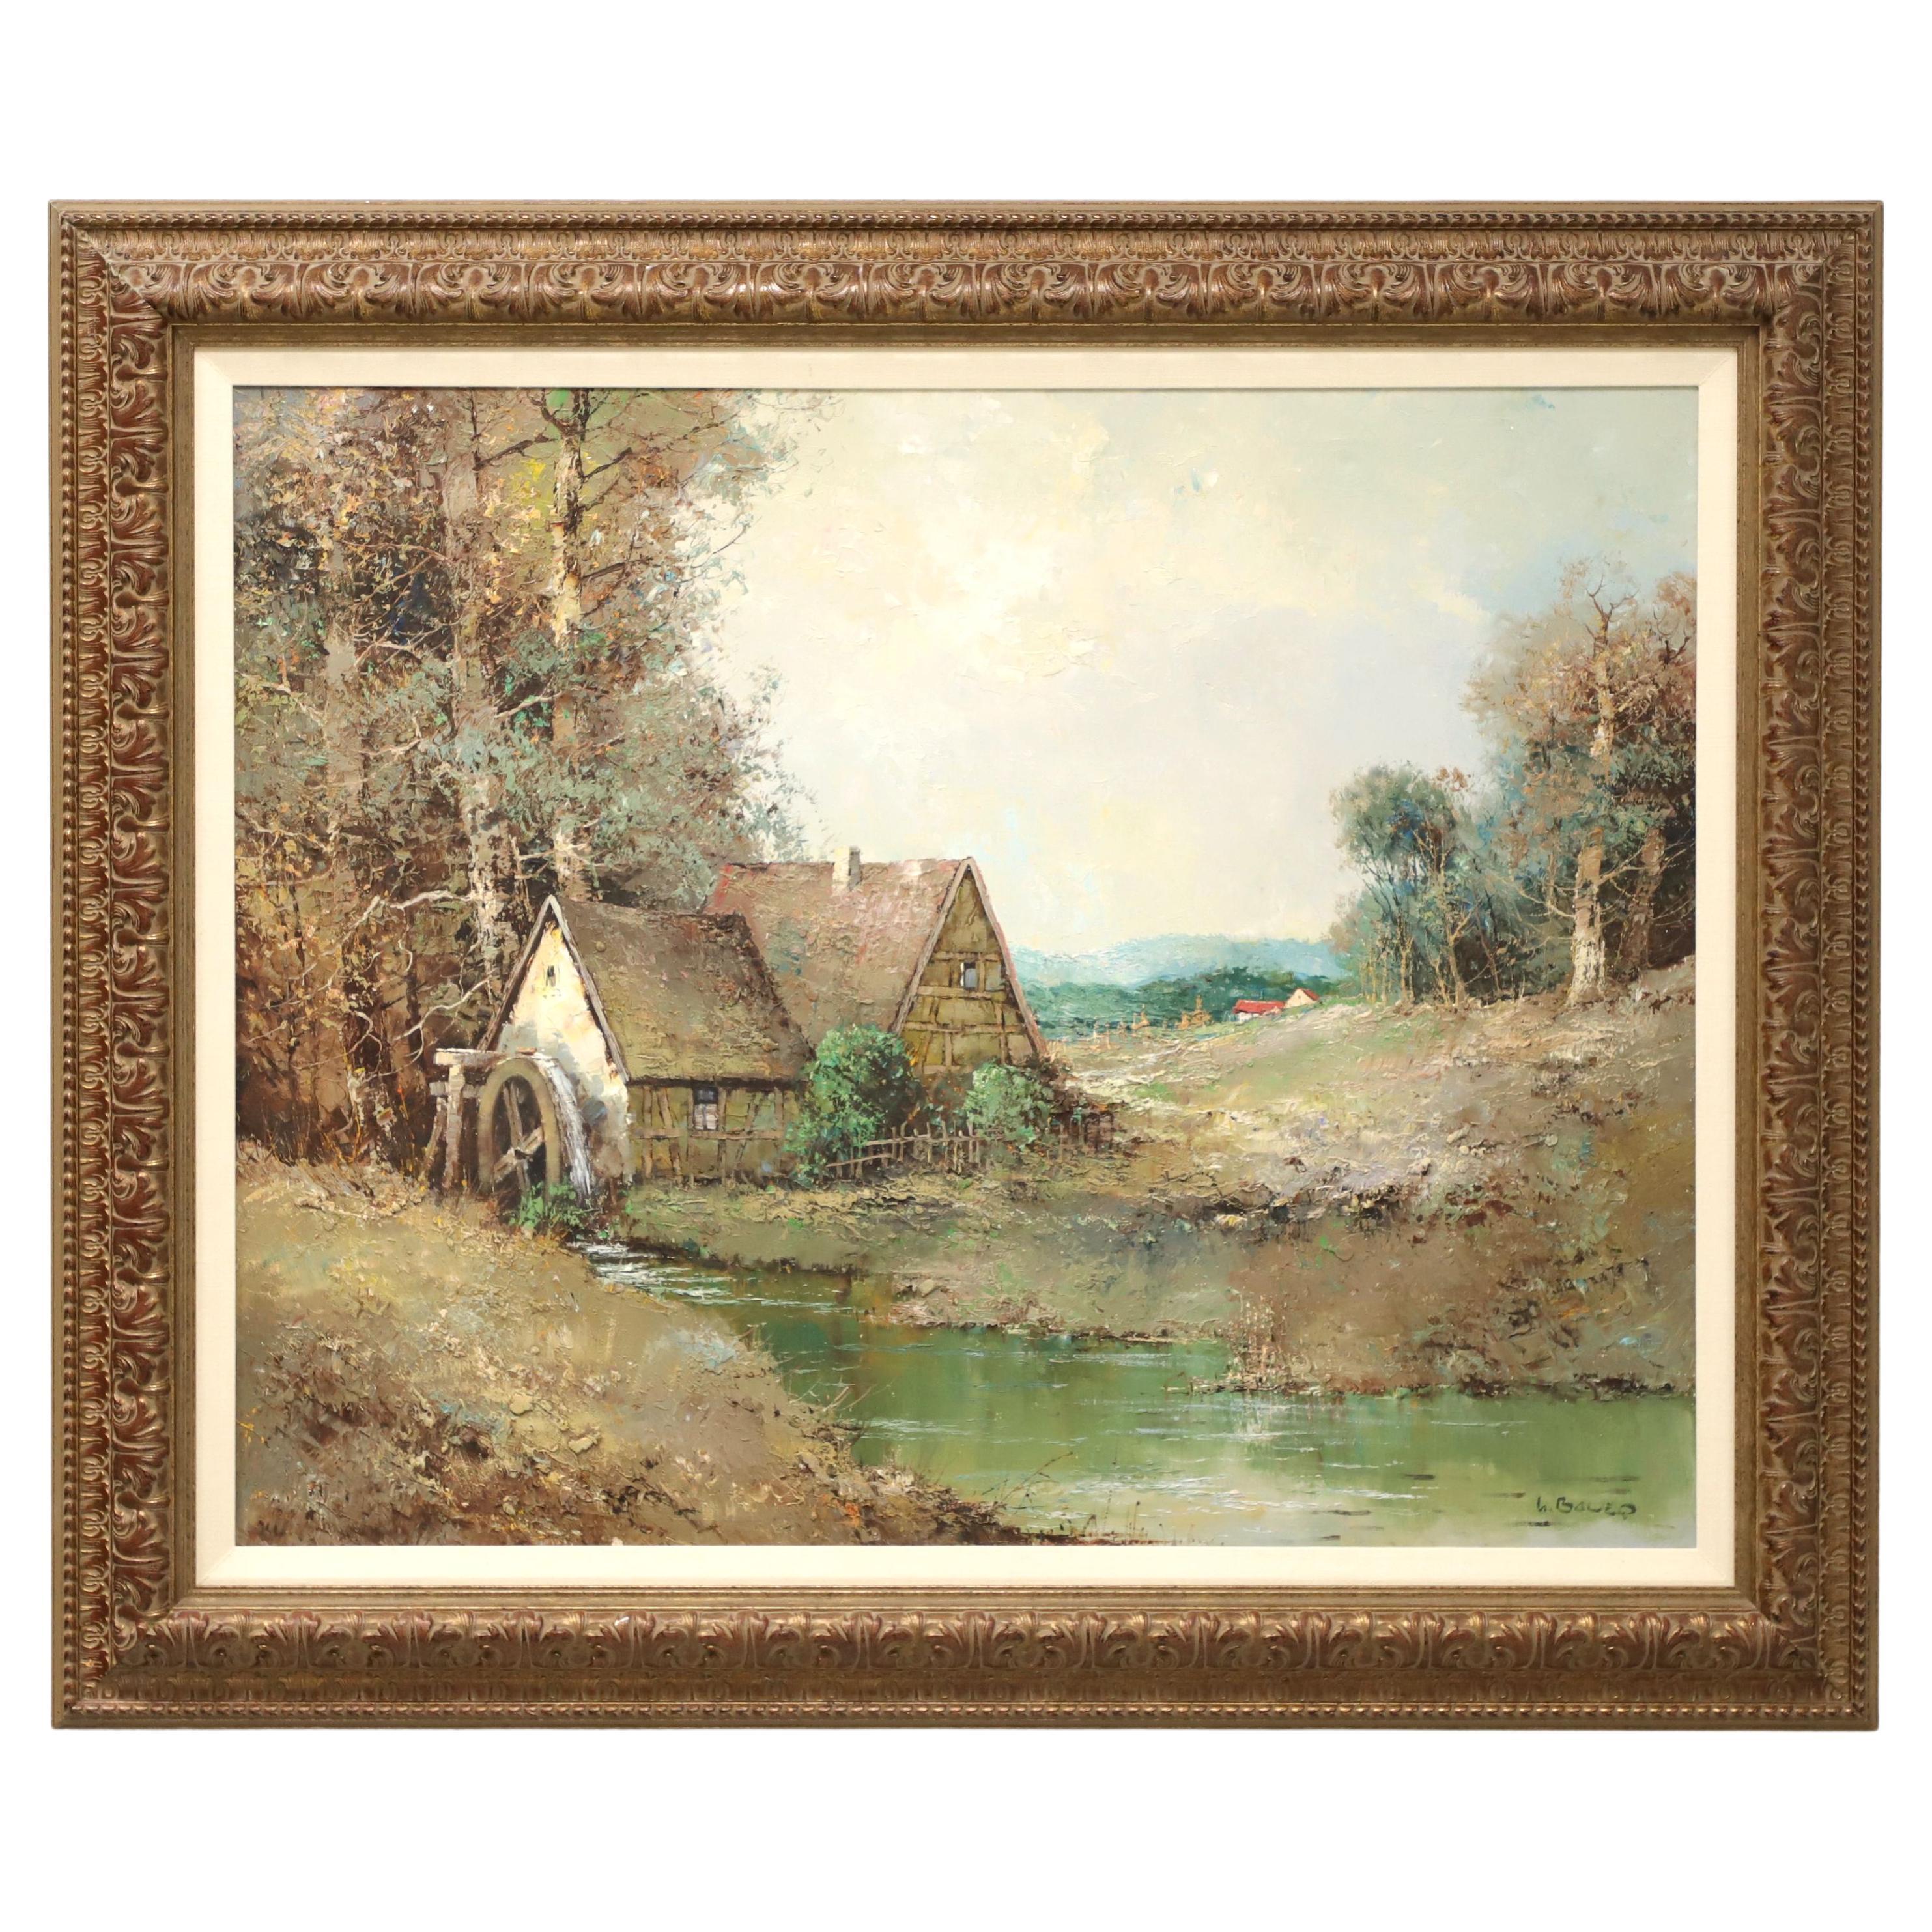 Original-Gemälde in Acryl auf Leinwand, Wassermühle-Szene, signiert von L. Bauer